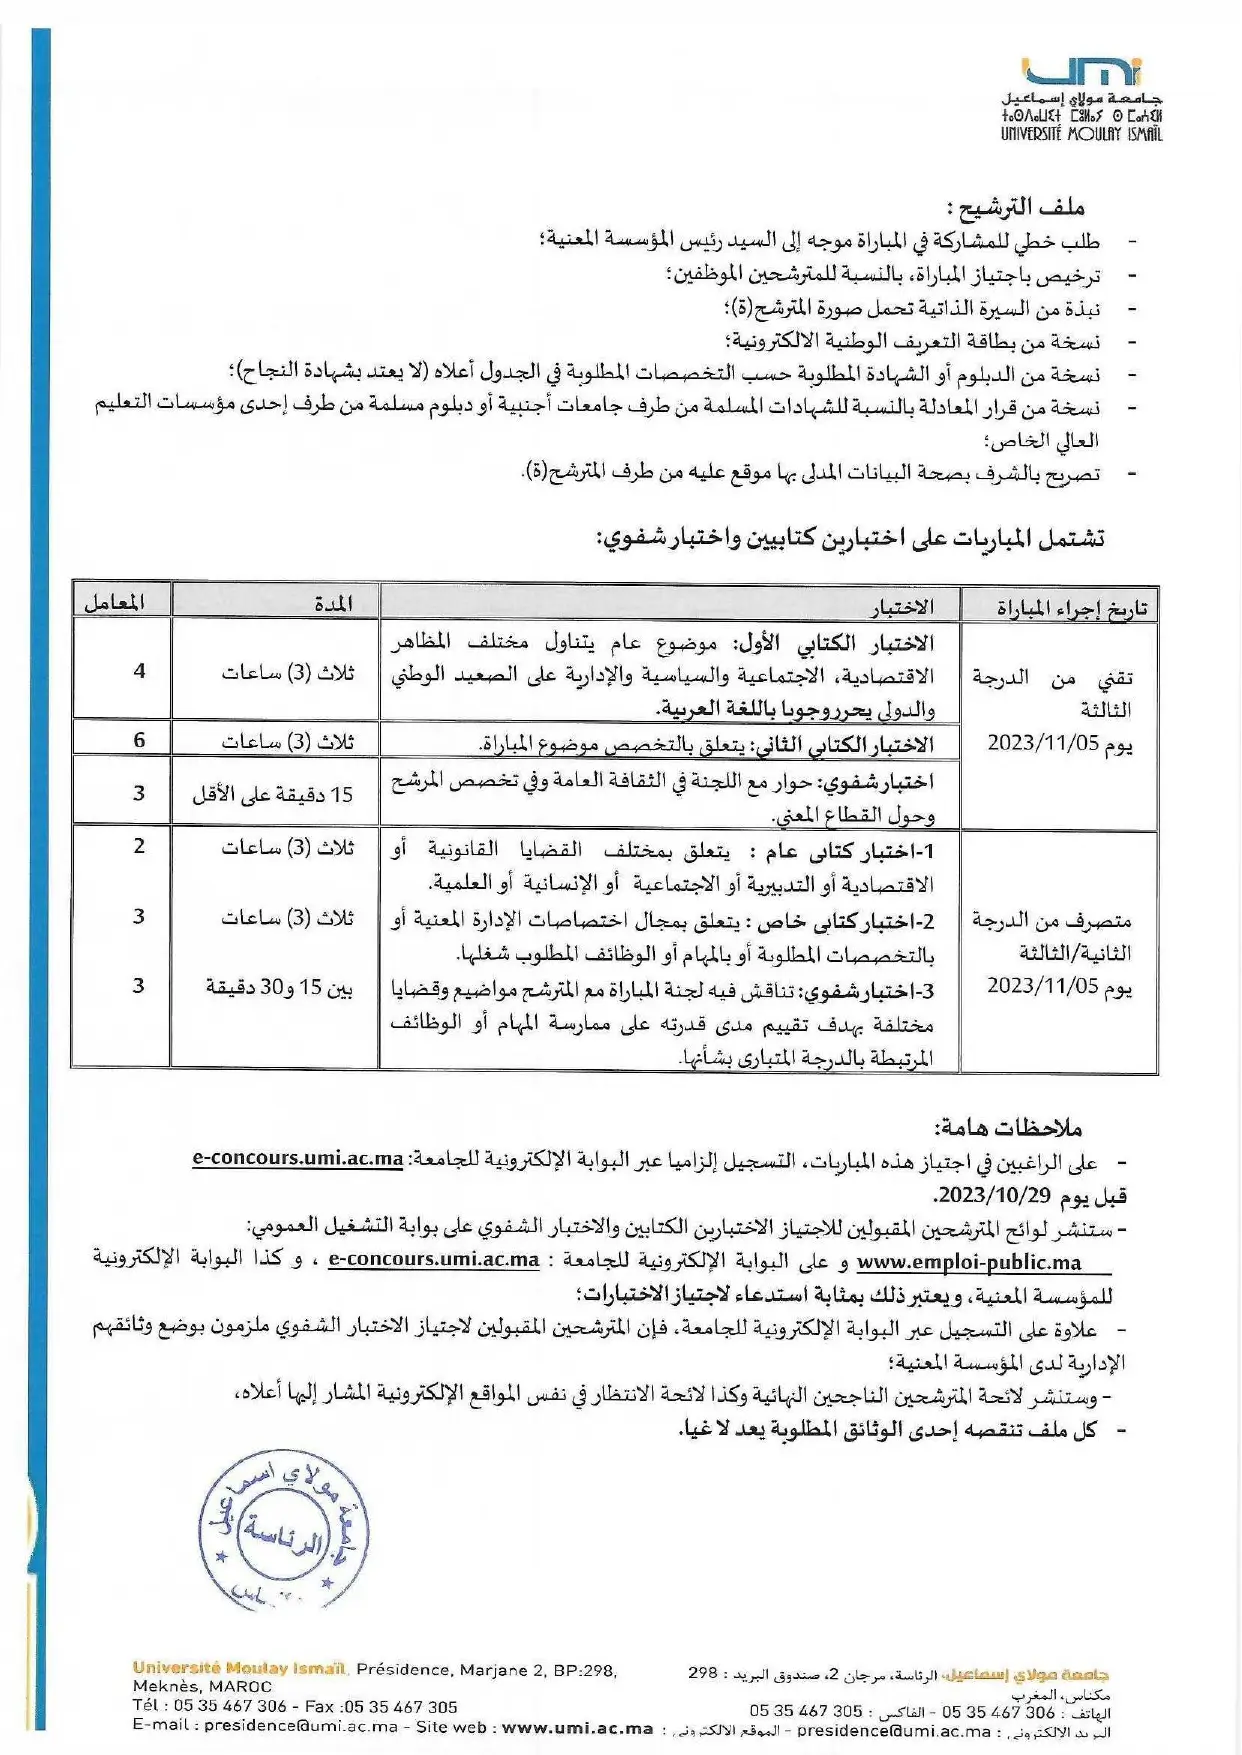 Concours Université Moulay Ismail 2023 (17 postes)